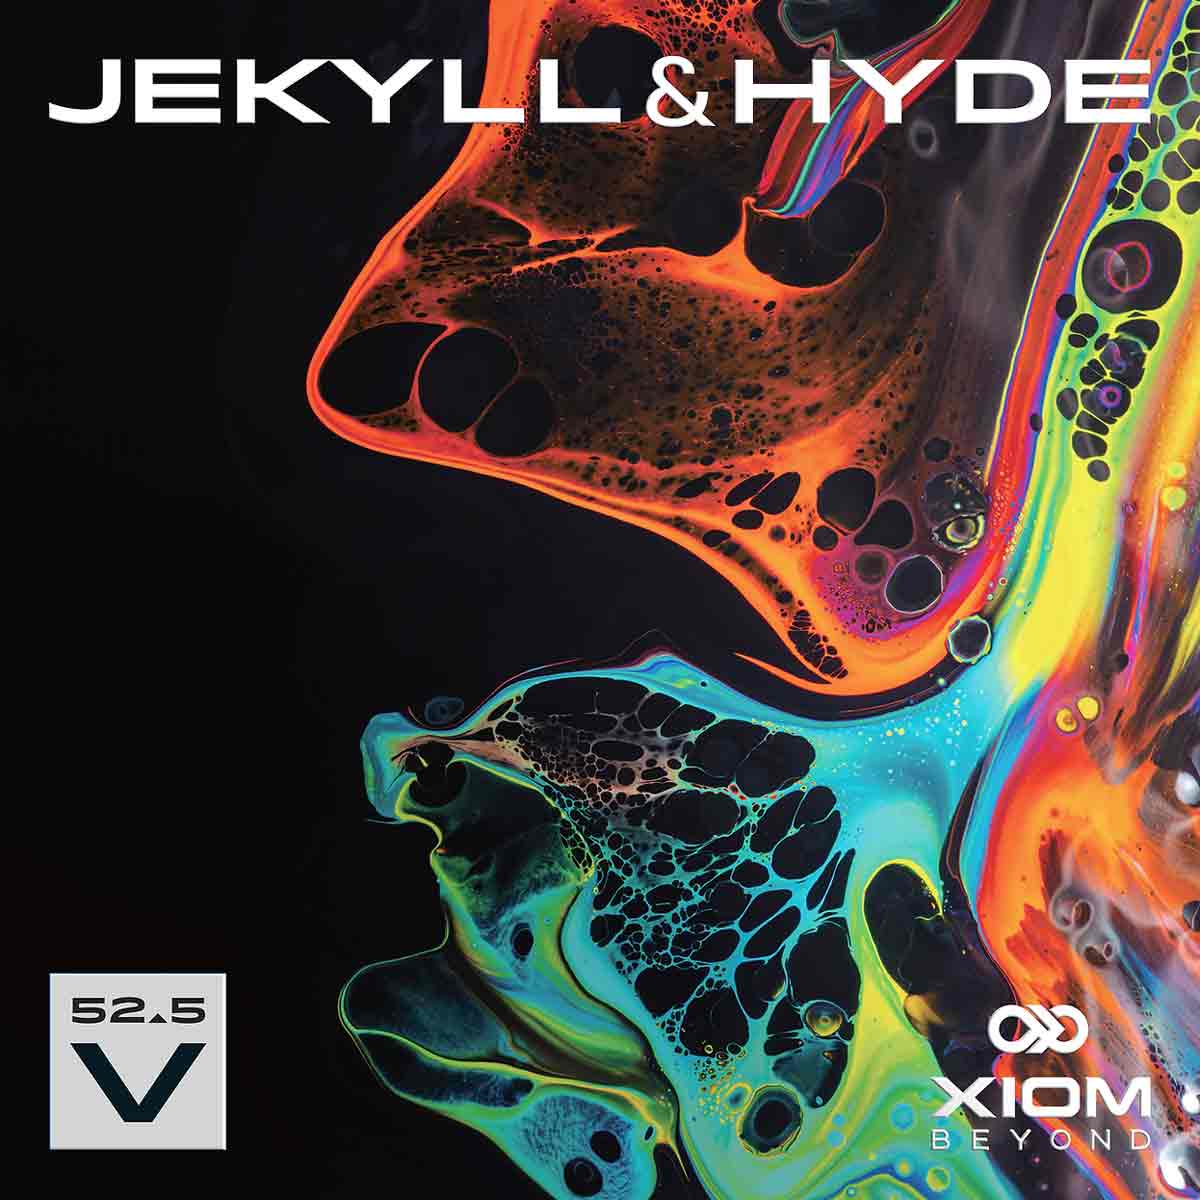 Xiom Belag Jekyll & Hyde V52.5 rot 2,1 mm